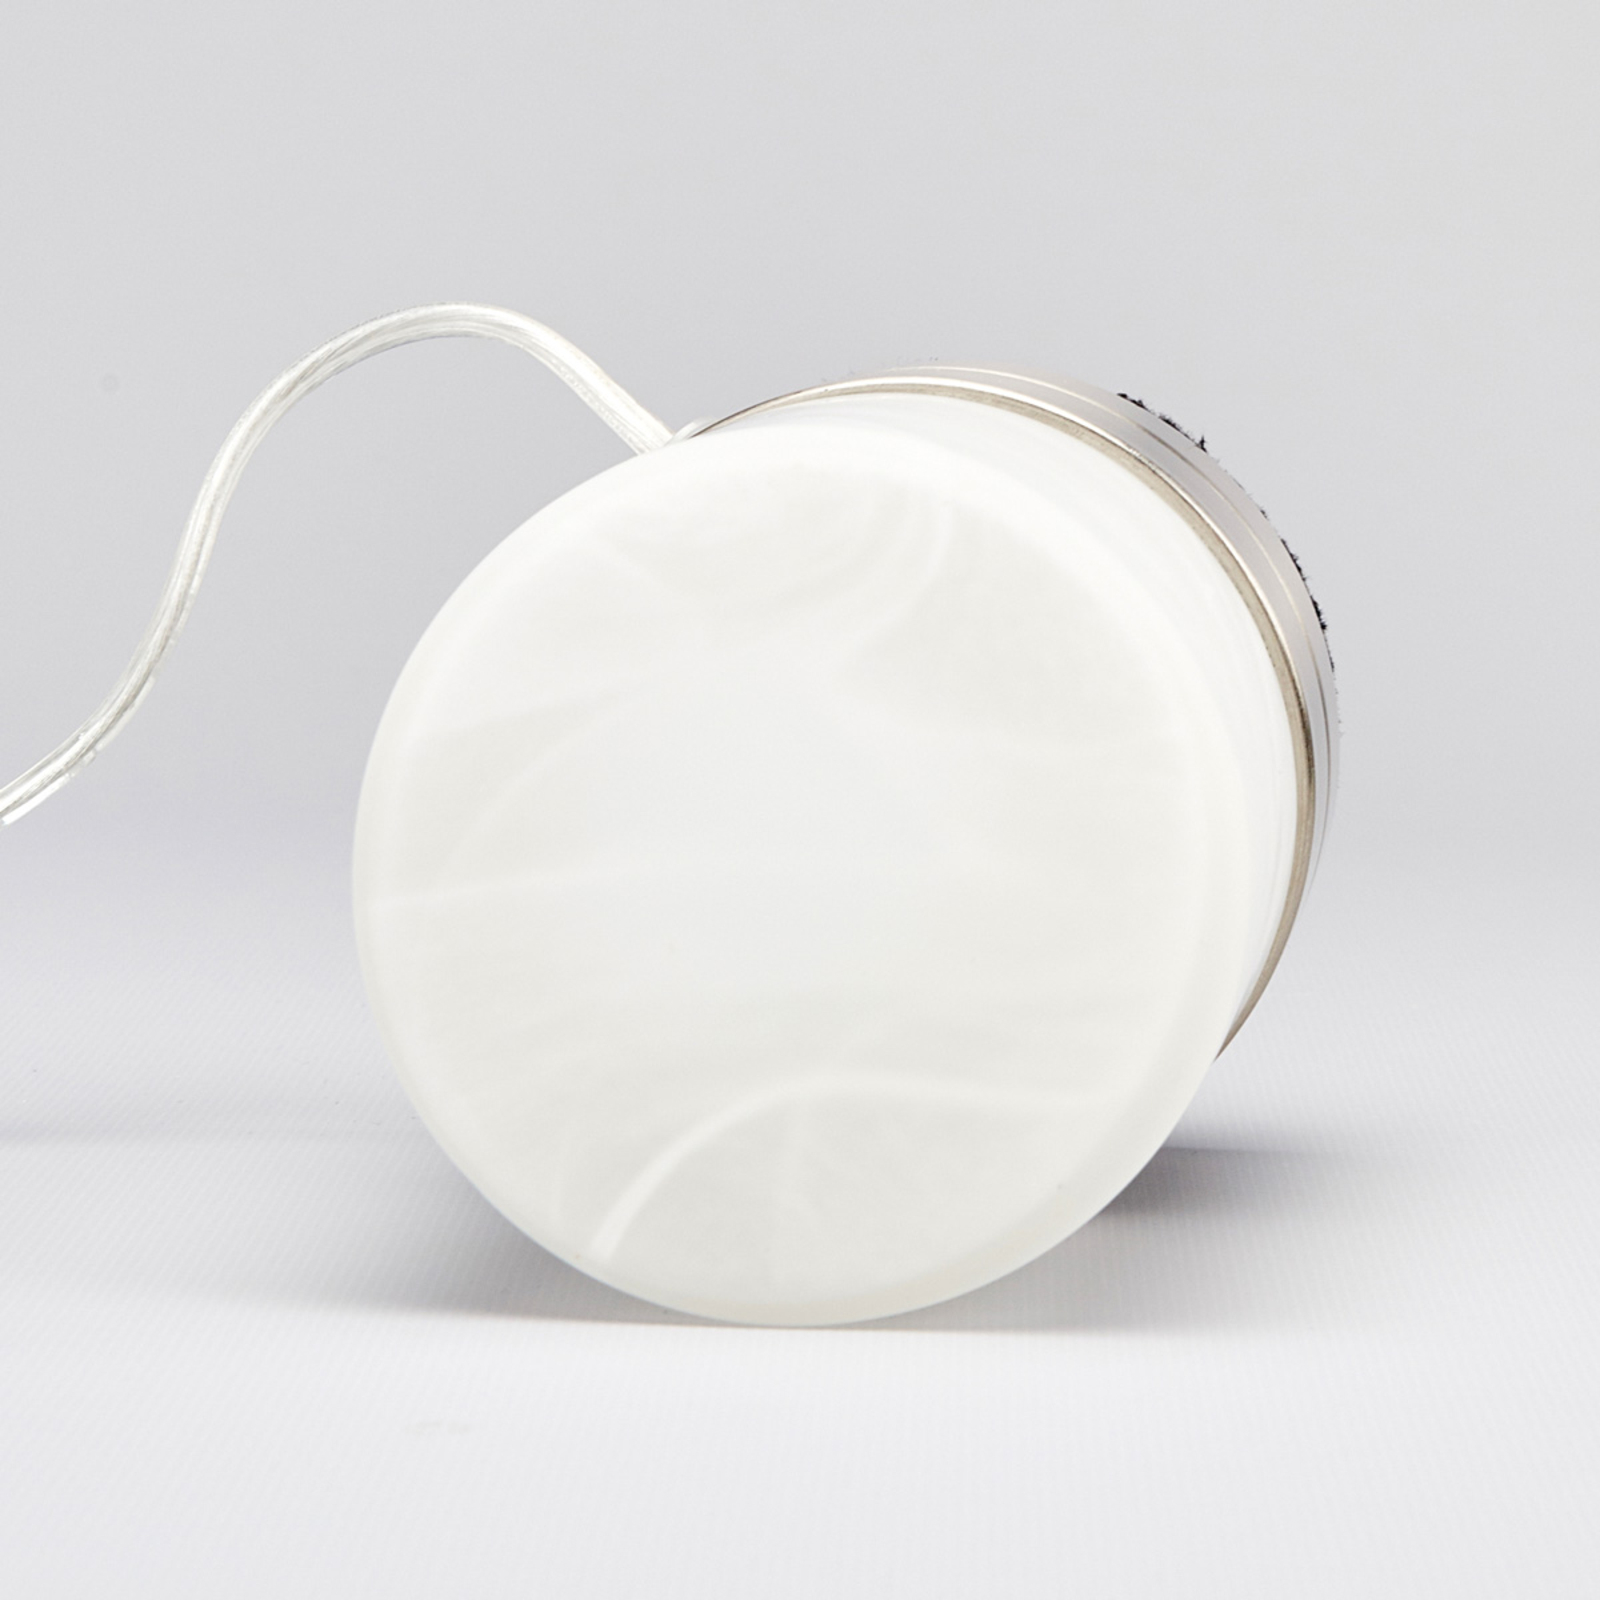 Sevda – stolová lampa v tvare valca